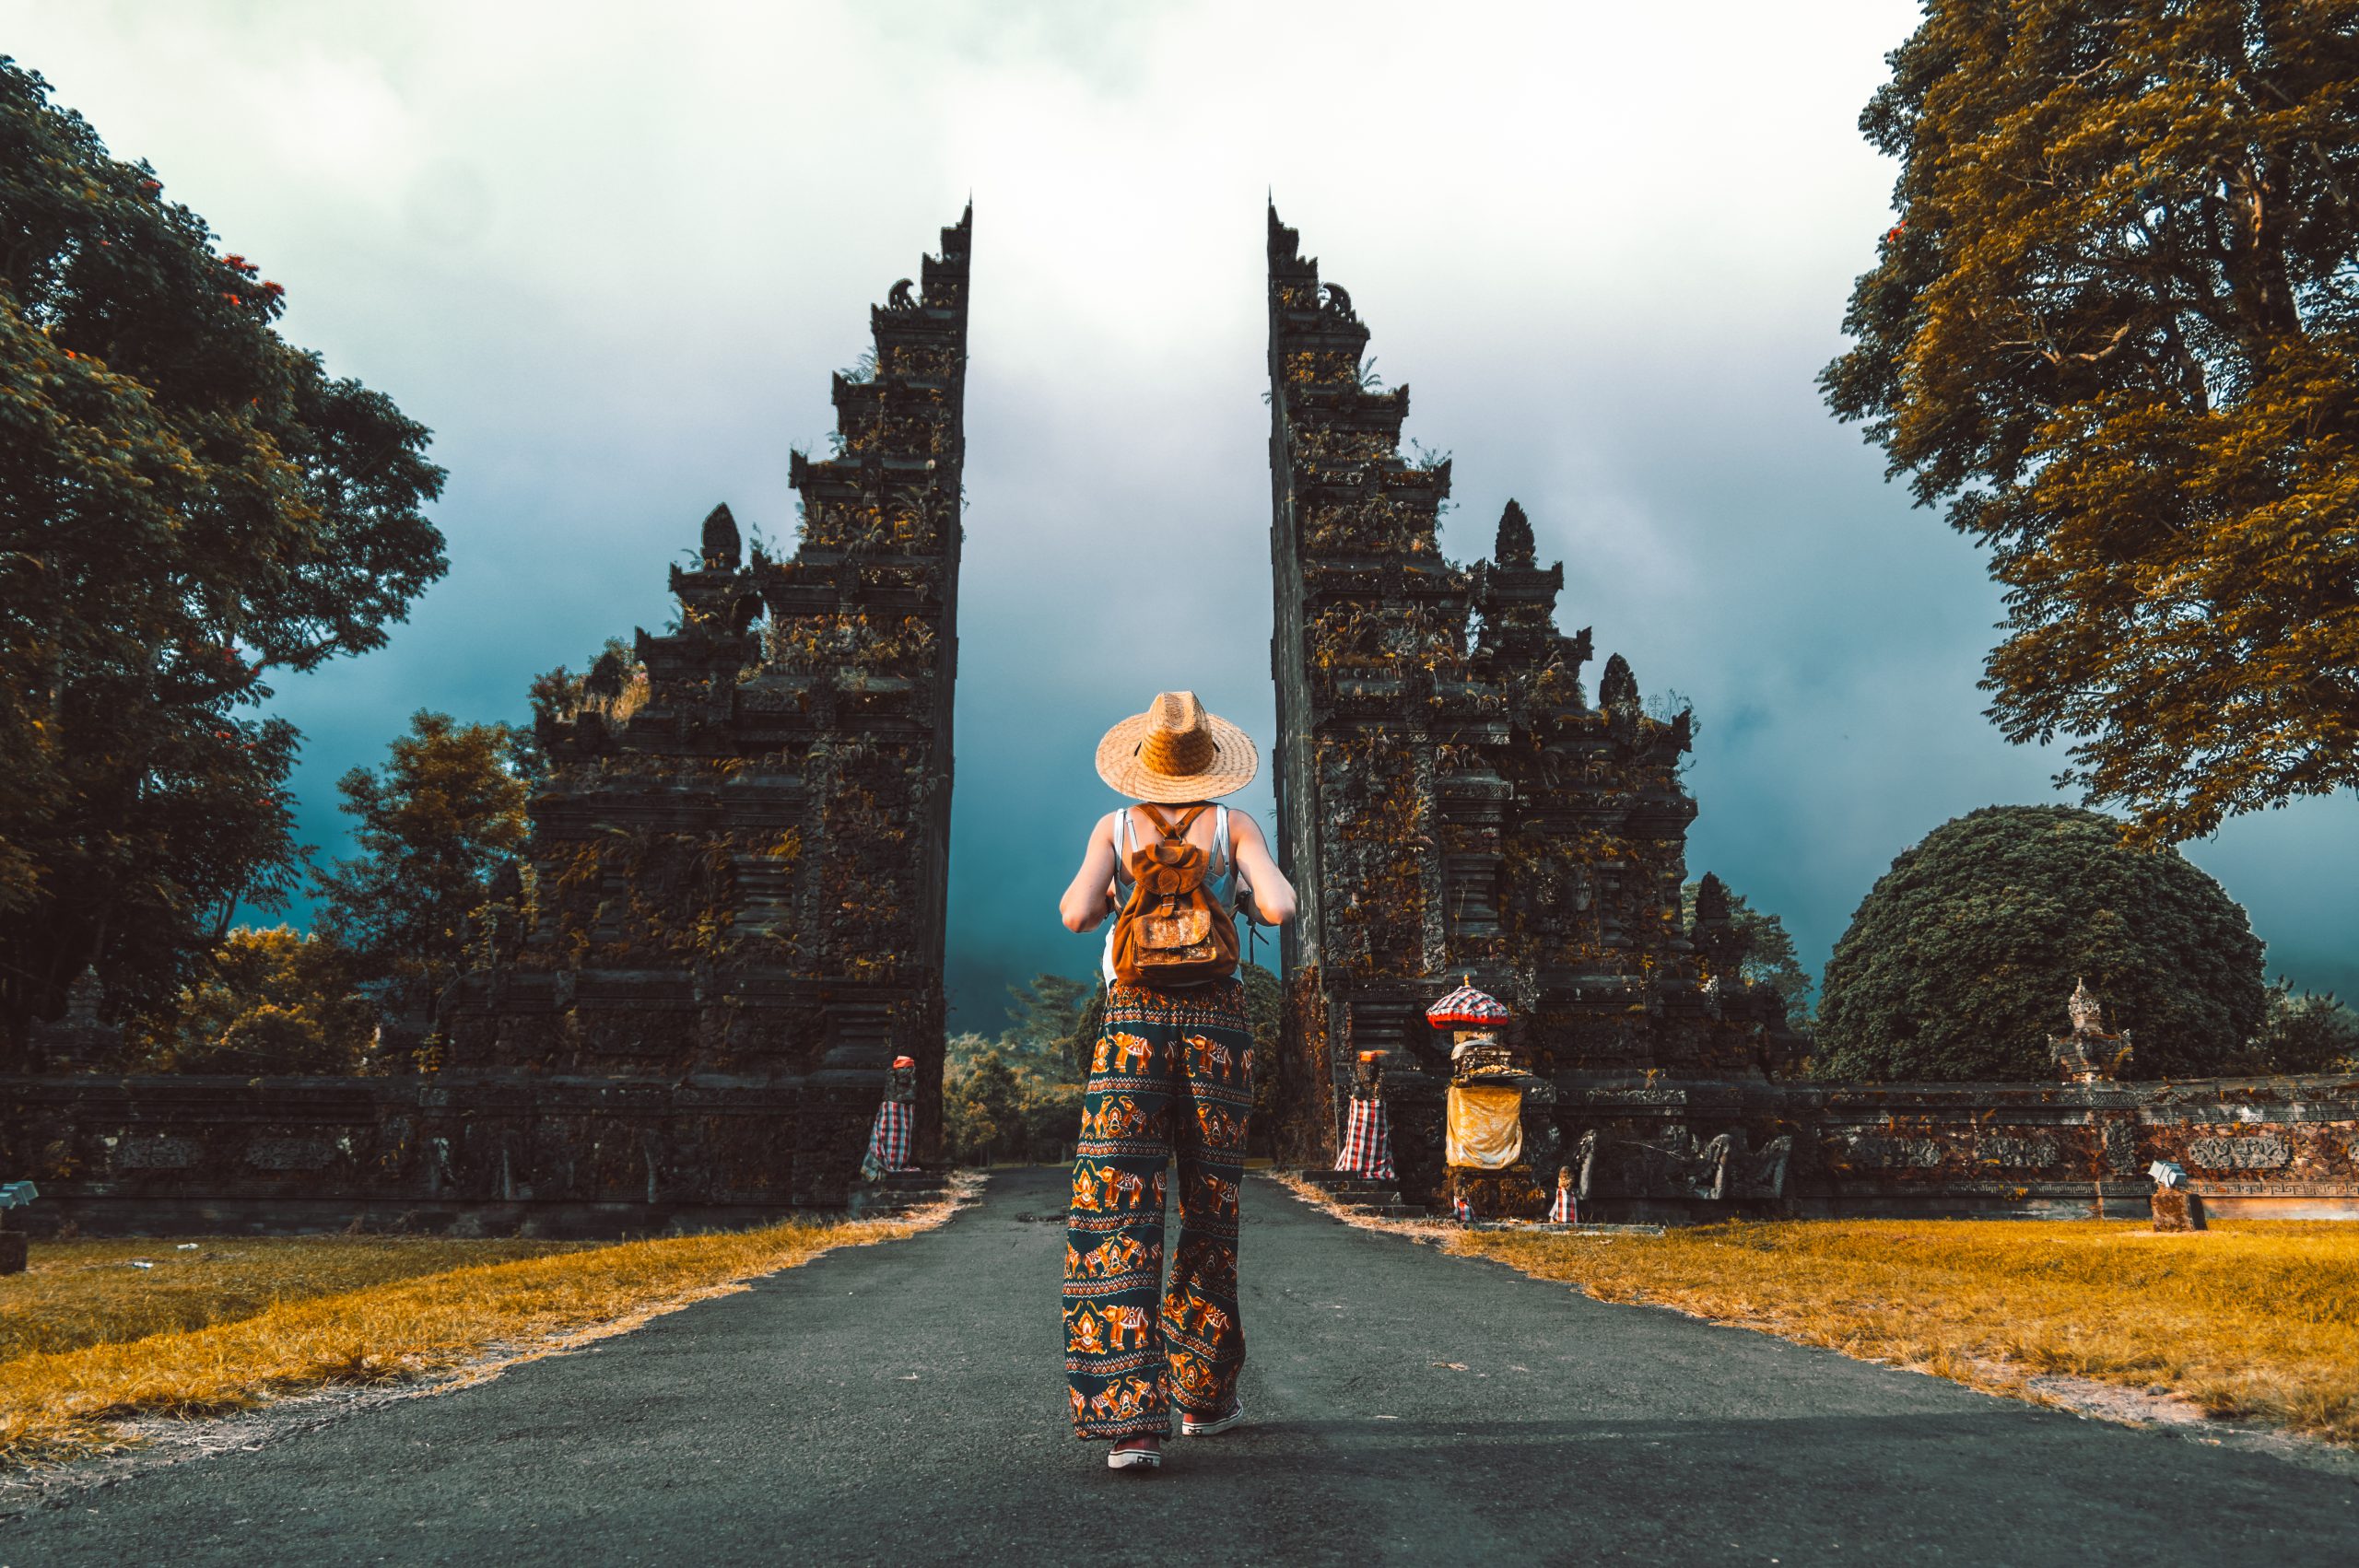 Cẩm nang đi du lịch Bali cho bạn | Pacific Cross Việt Nam